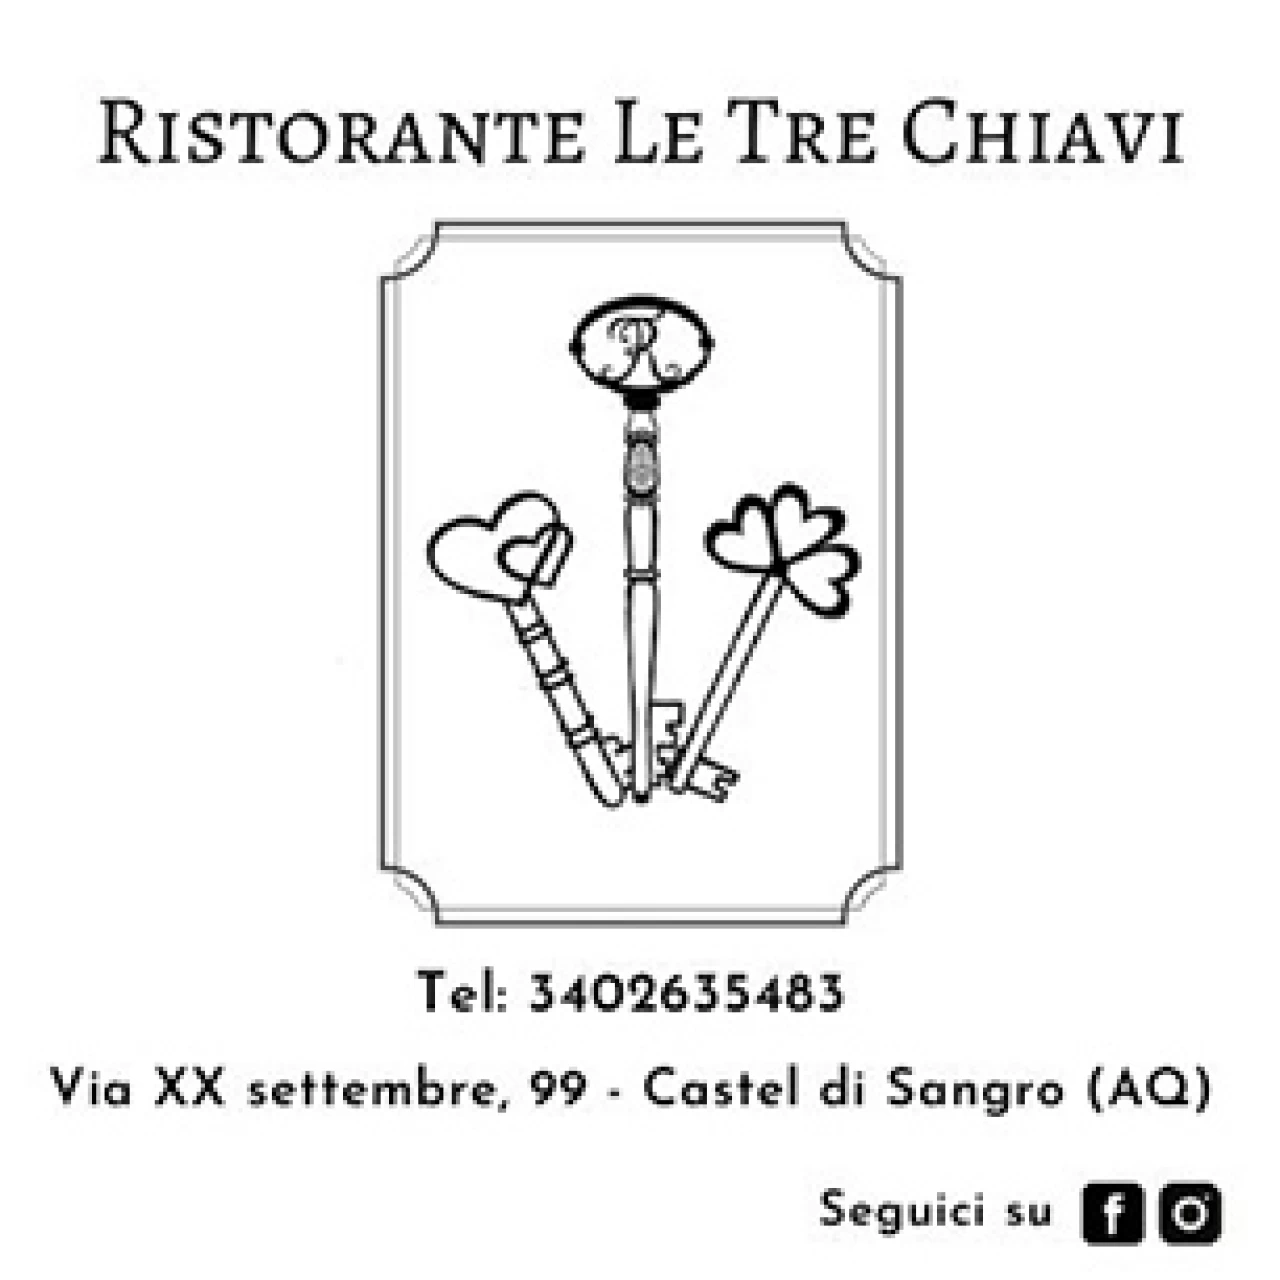 Banner Ristorante Le Tre Chiavi 306 per 306 pixel